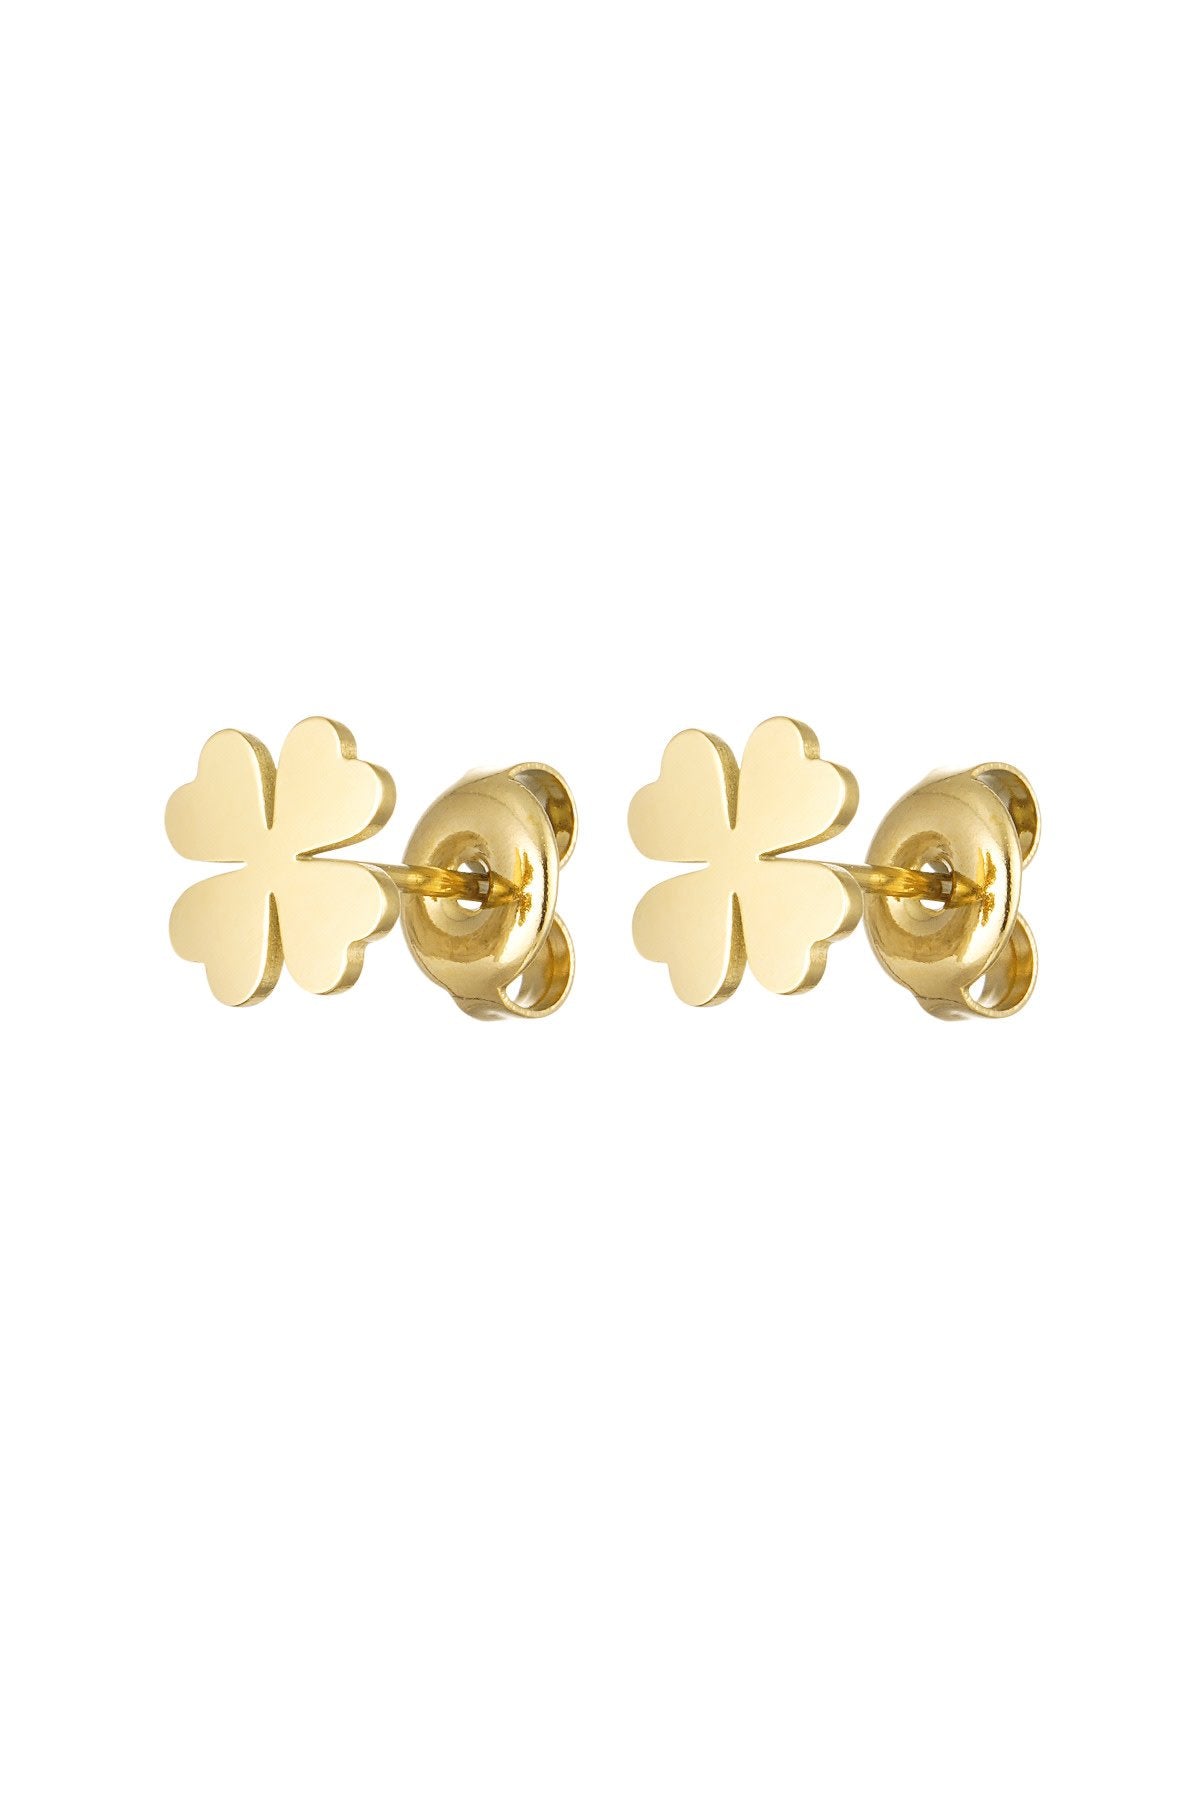 Stainless steel earrings clover gold